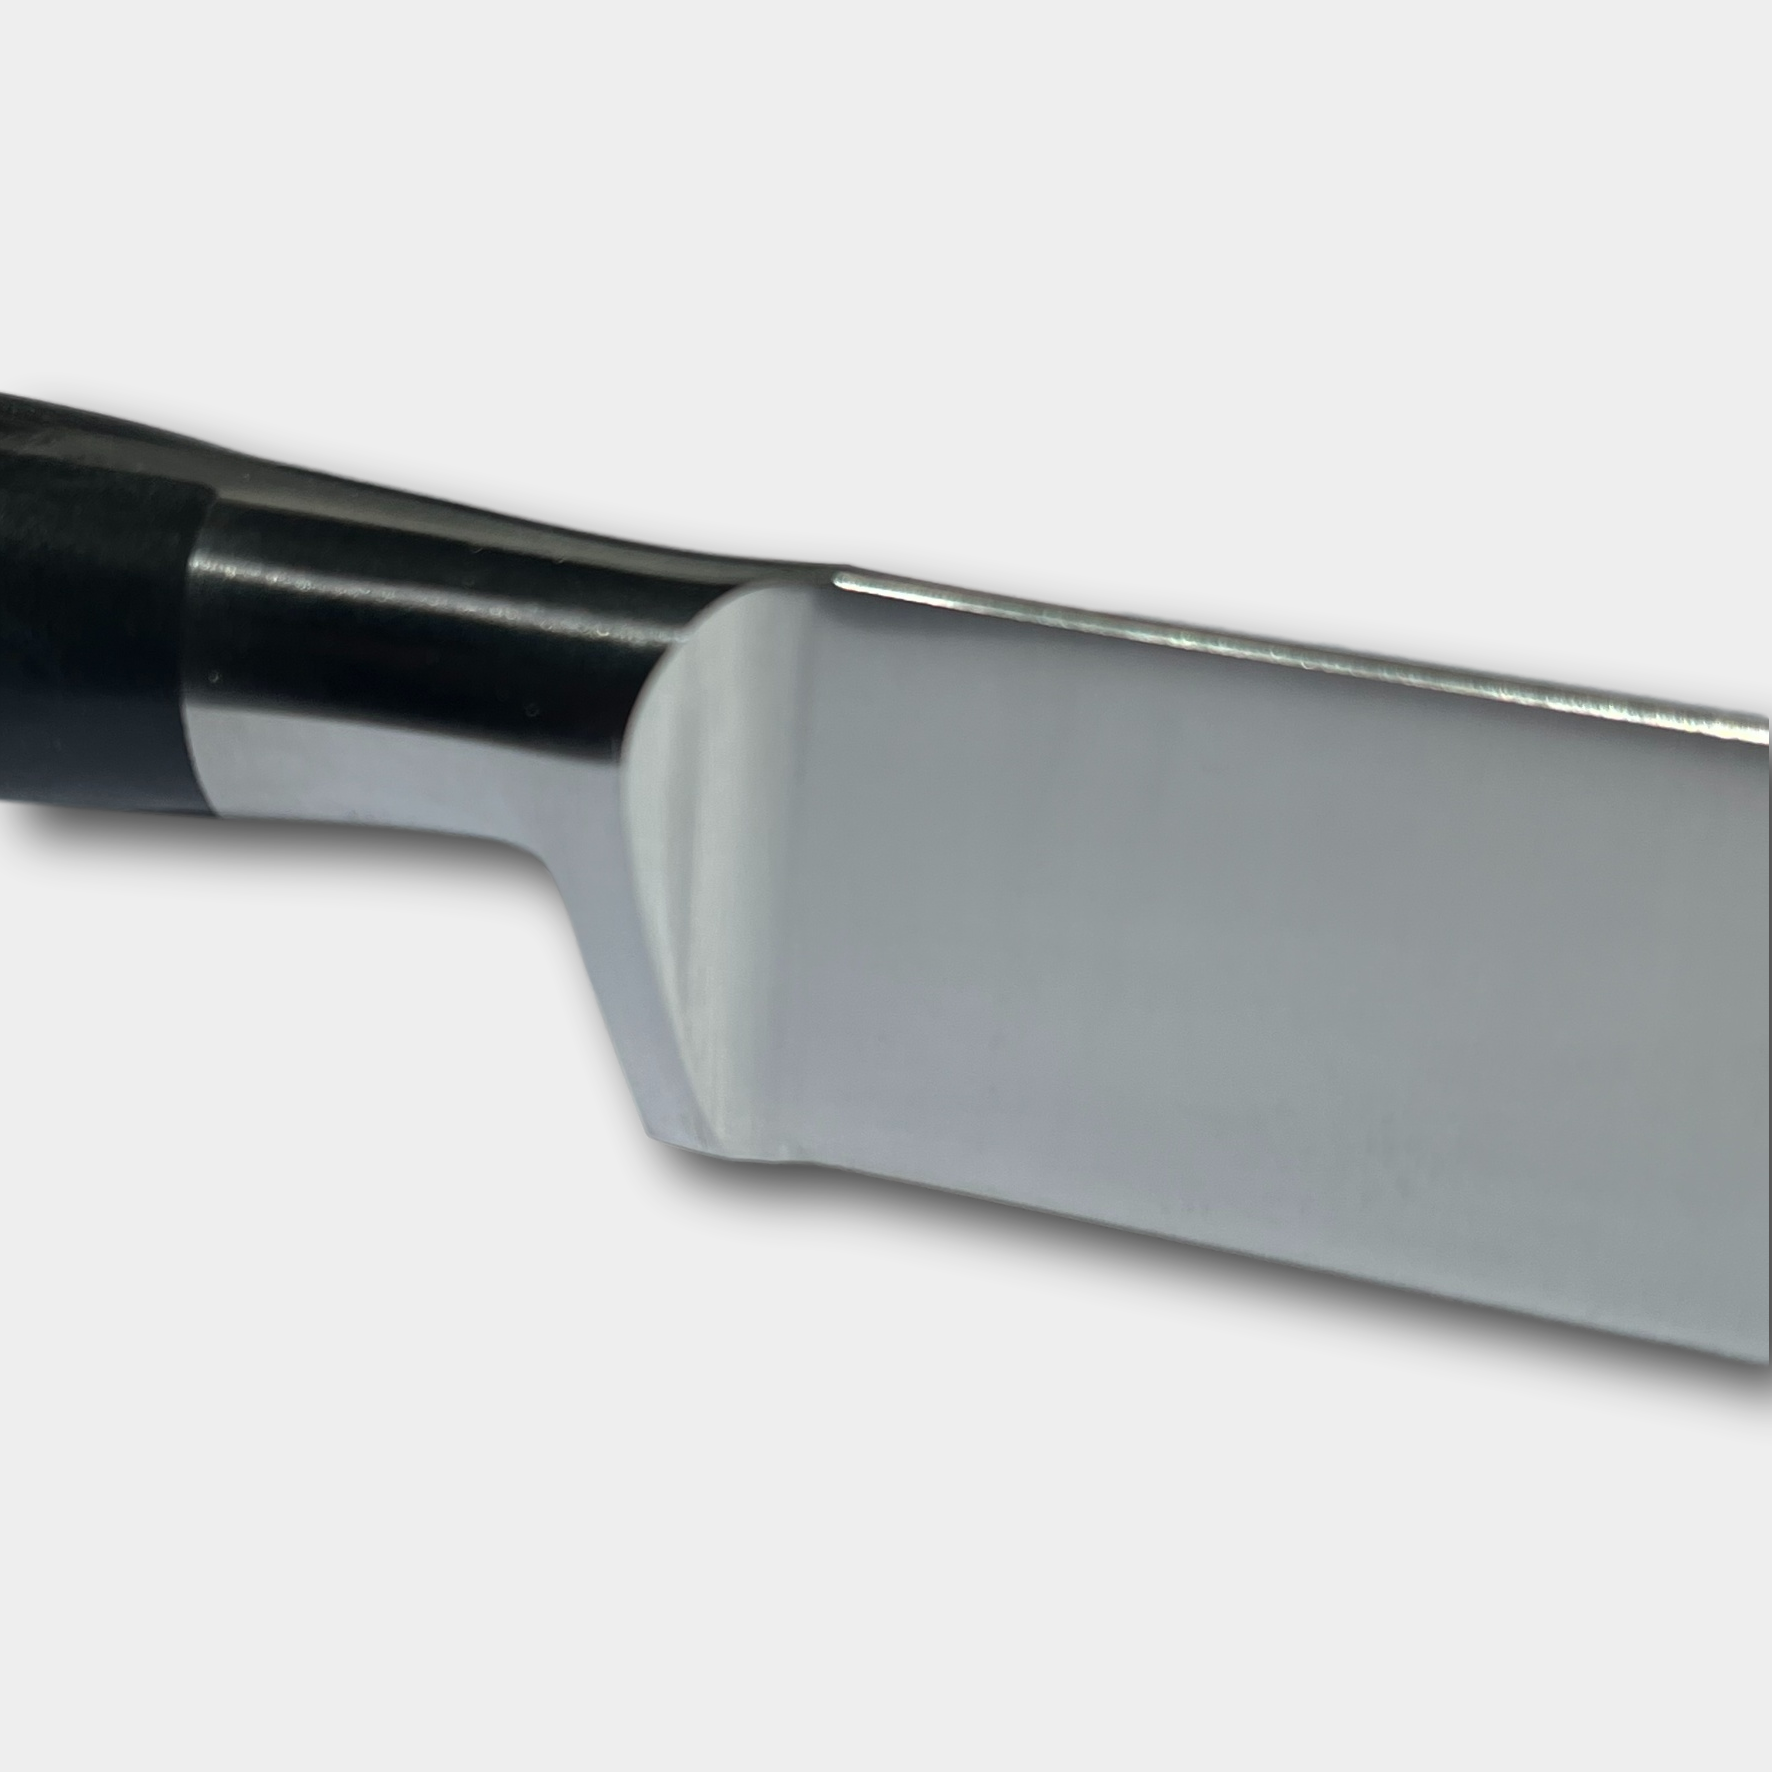 Lion Sabtier Ideal Steel 20cm Slicing Knife